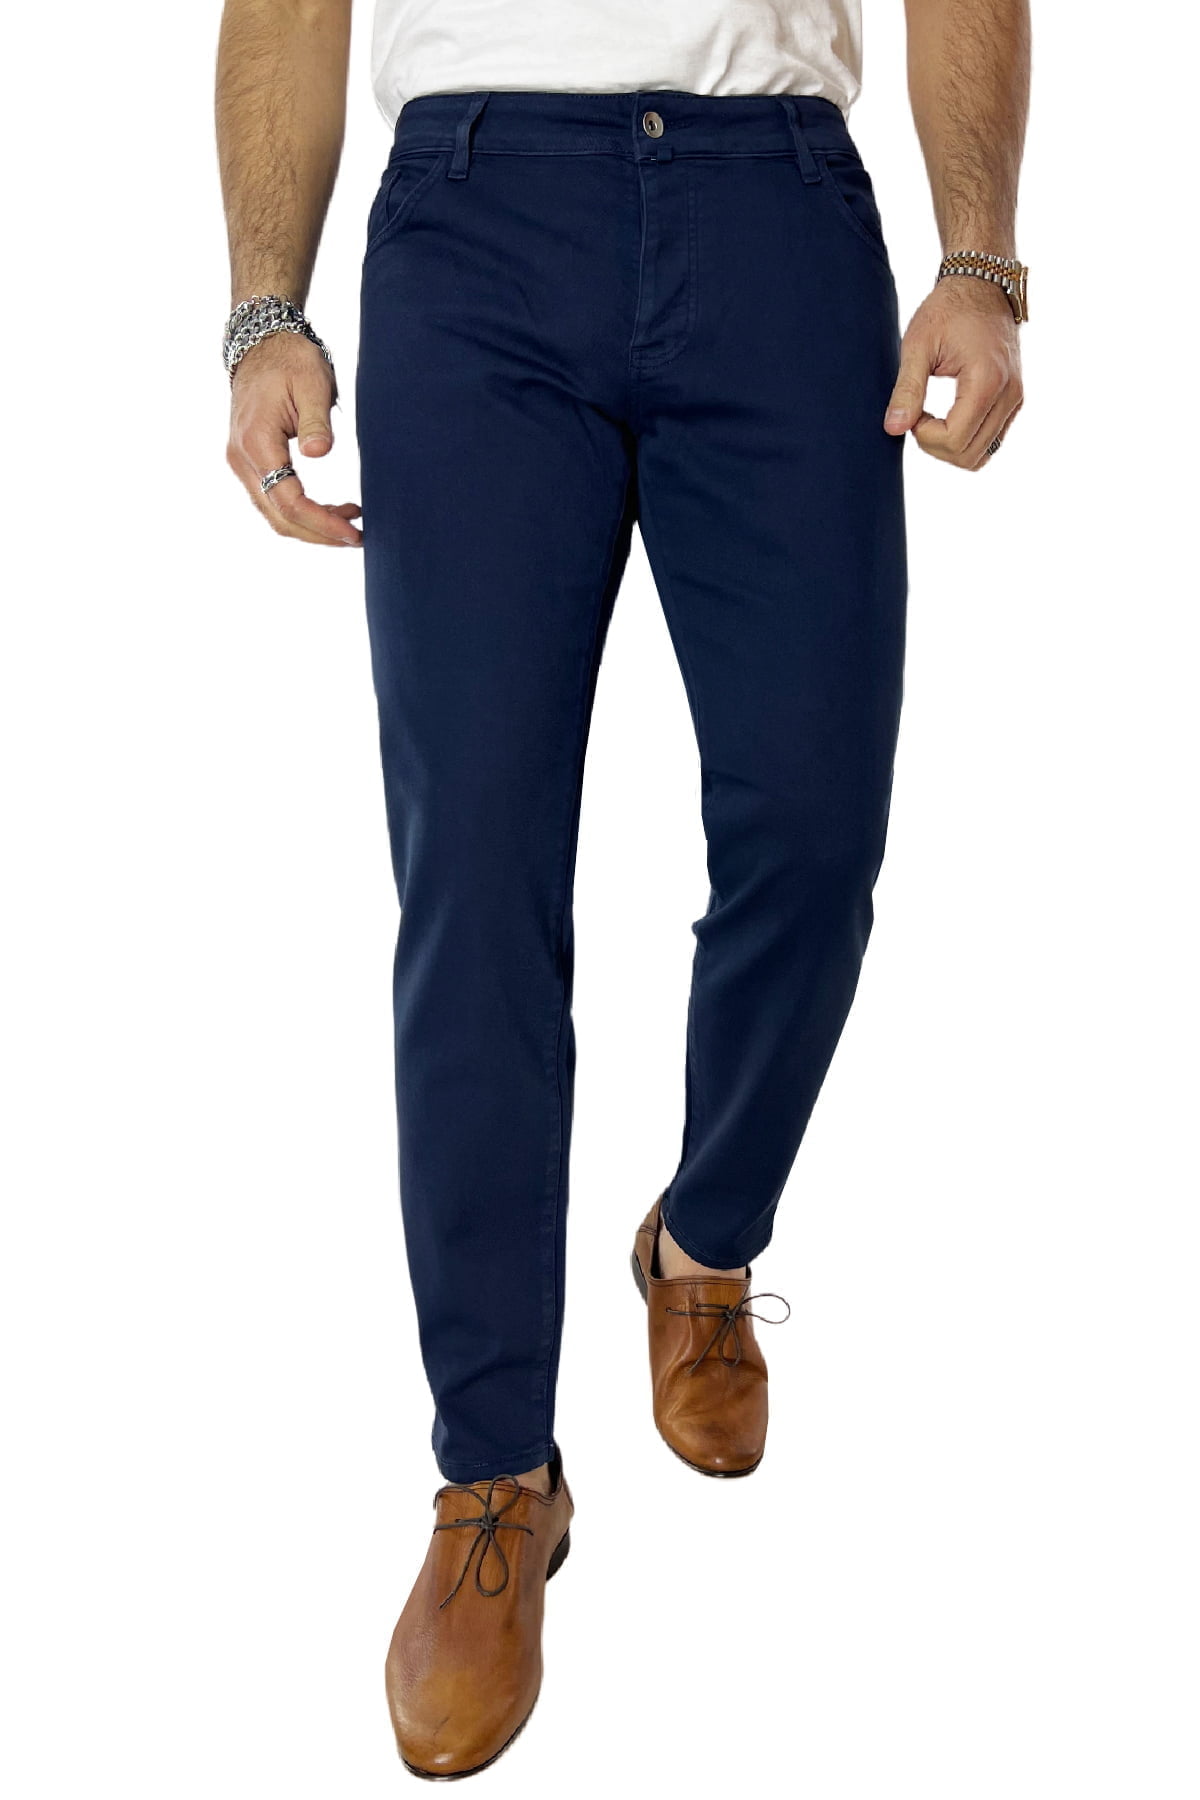 Jeans uomo blu tinta unita modello 5 tasche slim fit estivo made in italy